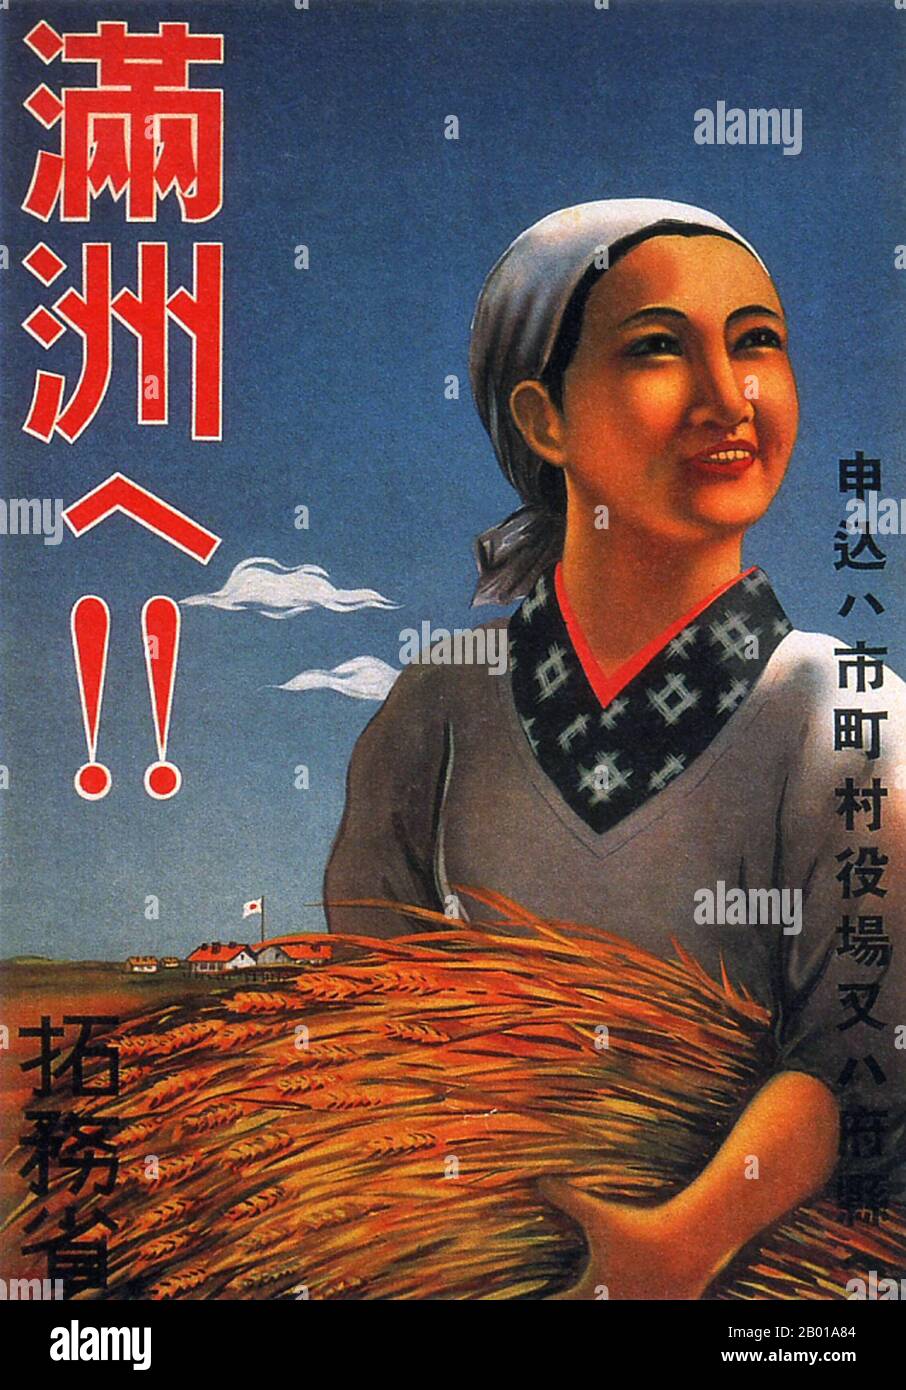 Japan: „Manchukuo!!“ Plakat des Außenministeriums, das die reichen Ernten der von Japan besetzten Mandschurei preist, 1927. Ende 1920s und 1930s entwickelte sich in Japan ein neuer Plakatstil, der den wachsenden Einfluss der Massen in der japanischen Gesellschaft widerspiegelt. Diese Kunstplakate waren stark von den aufkommenden politischen Kräften des Kommunismus und des Faschismus in Europa und der Sowjetunion beeinflusst und nahmen einen Stil an, der kühne Slogans mit künstlerischen Themen einarbeitete, die vom linken sozialistischen Realismus über Staatismus und staatlich gelenkte öffentliche Wohlfahrt bis hin zu Militarismus und imperialistischem Expansionismus reichten. Stockfoto